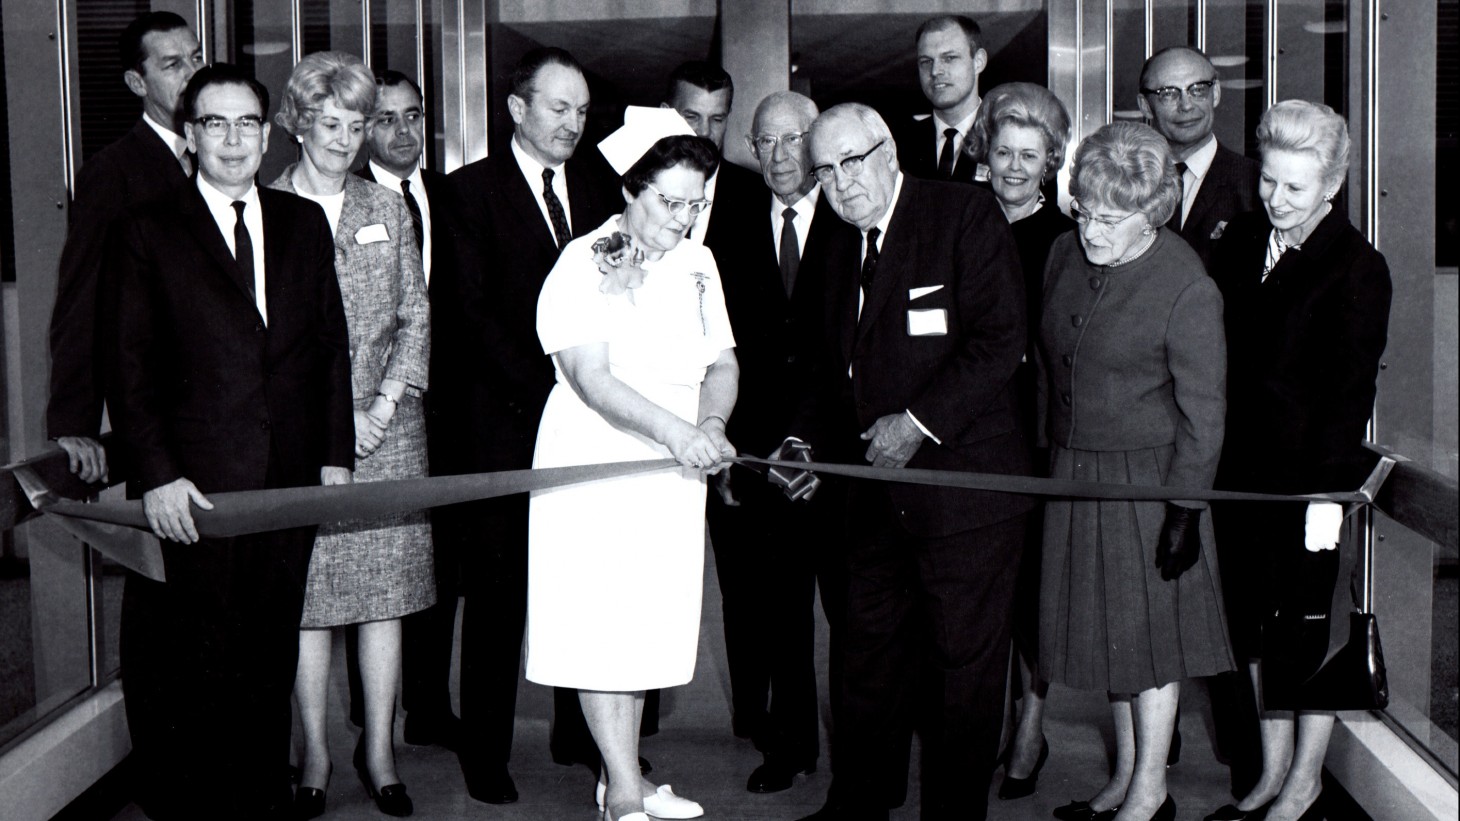 A nurse and group of dignitaries at a ribbon cutting 